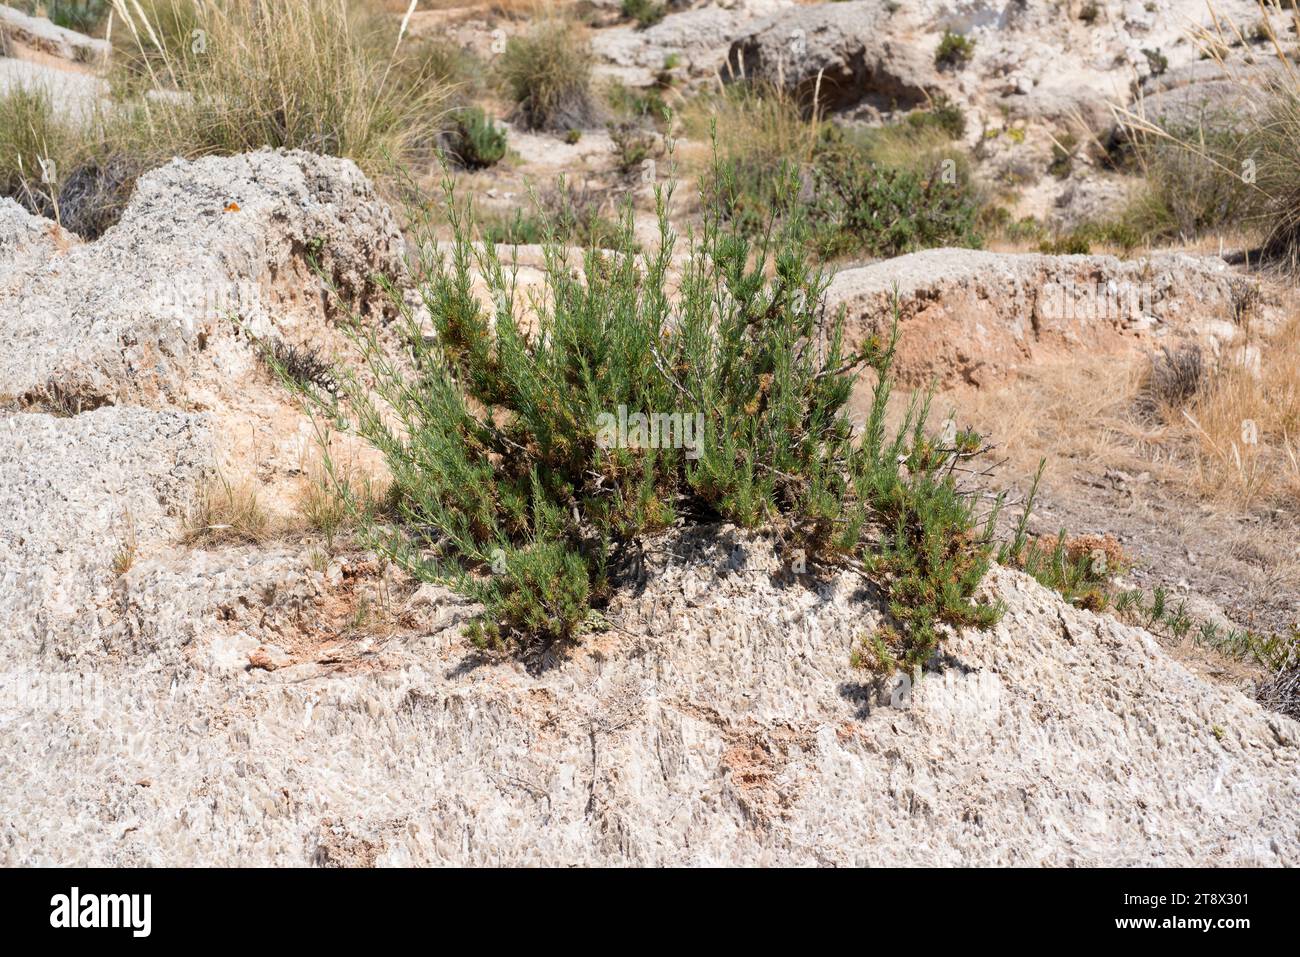 Albada o jabonera (Gypsophila sthrutium) ist eine auf der iberischen Halbinsel endemische Gipspflanze. Dieses Foto wurde in Karst en yesos de Sorbas in Almeria aufgenommen Stockfoto